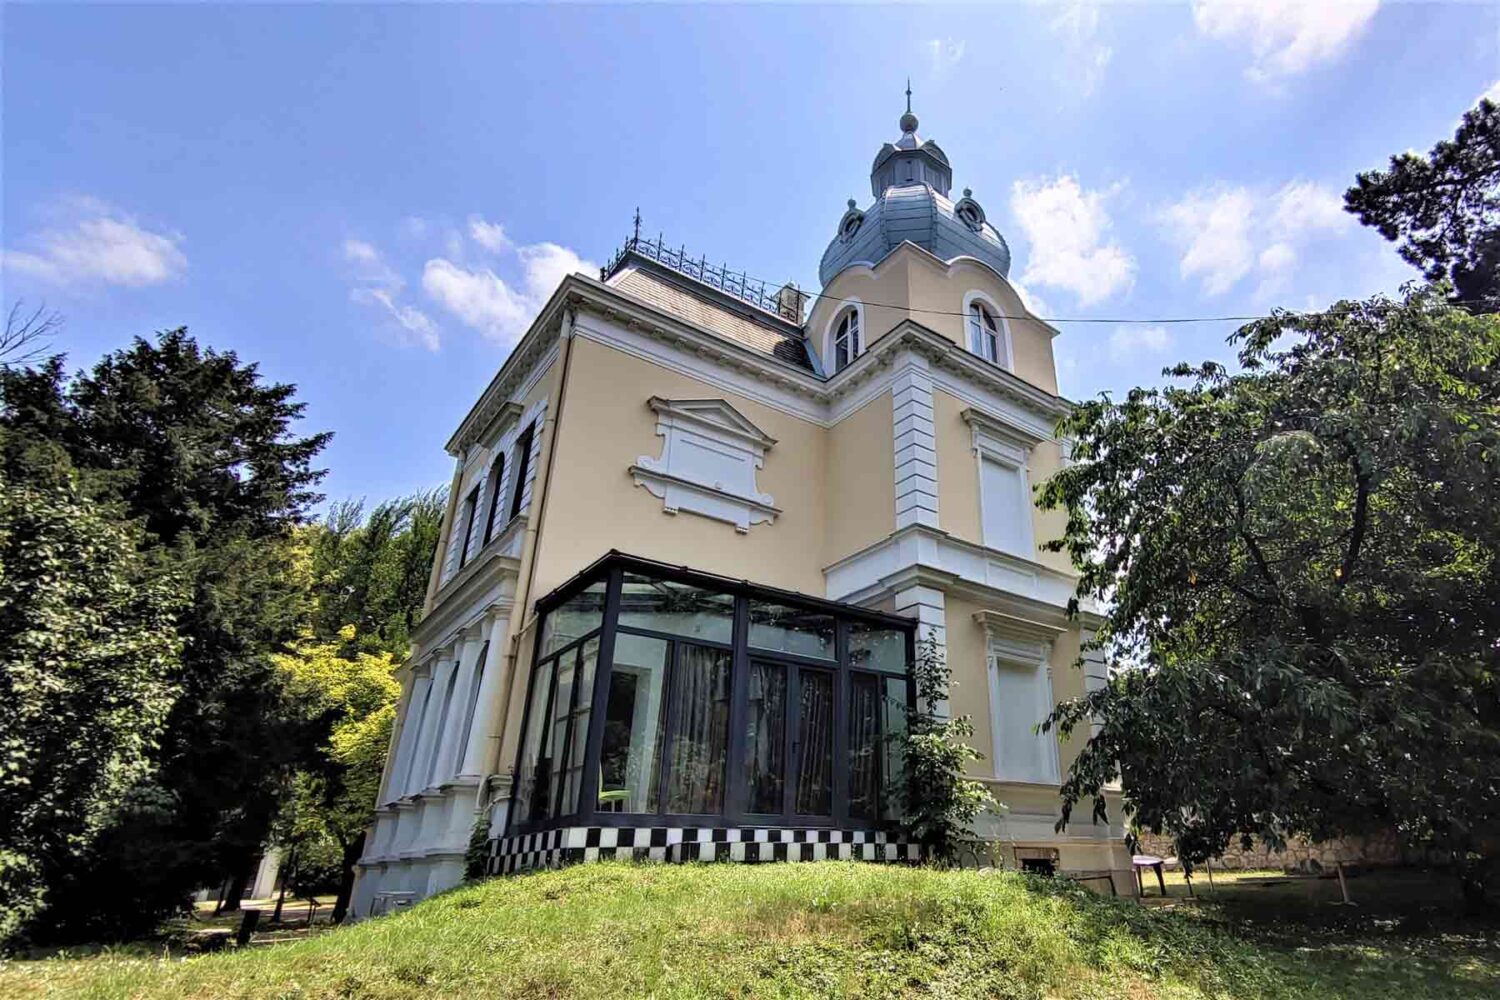 Kuća kralja Petra I Karađorđevića na Senjaku